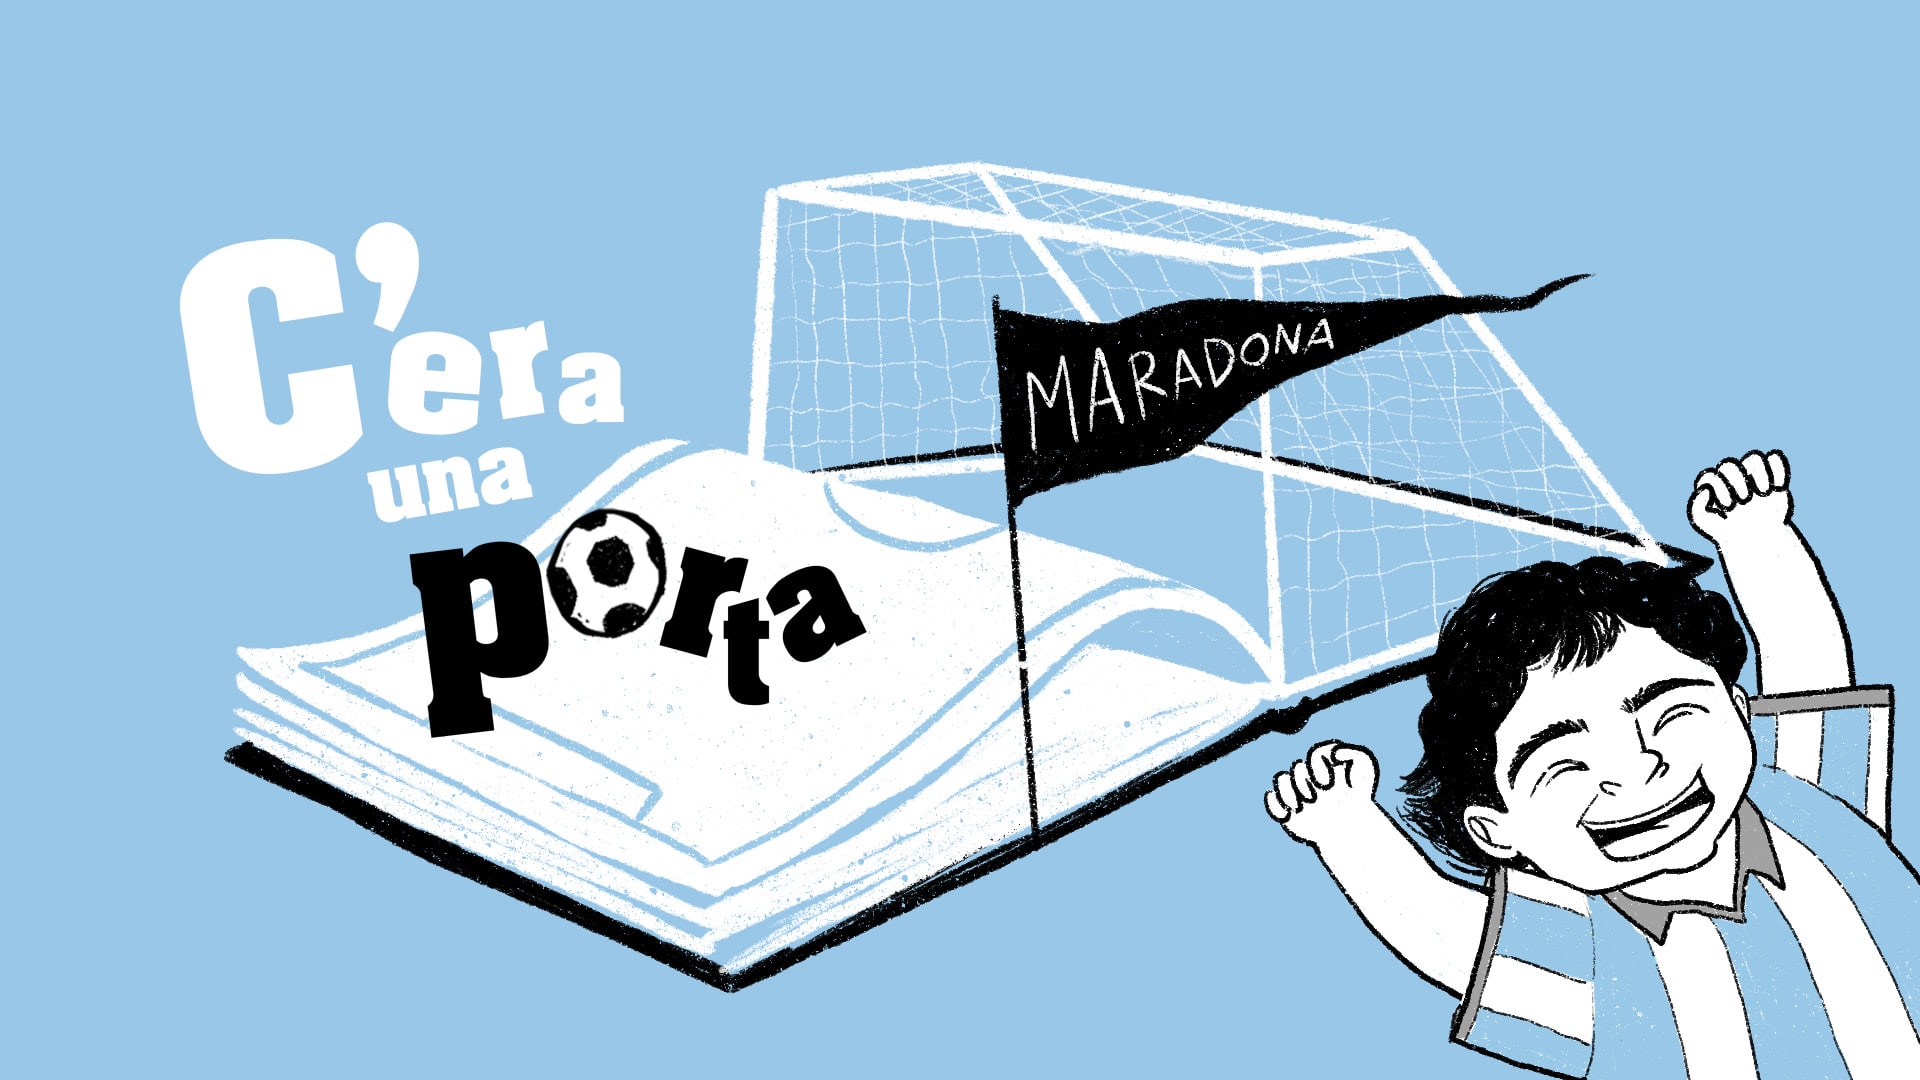 C’era una porta: le fiabe del calcio raccontate da DAZN - Oggi l'episodio su Maradona thumbnail